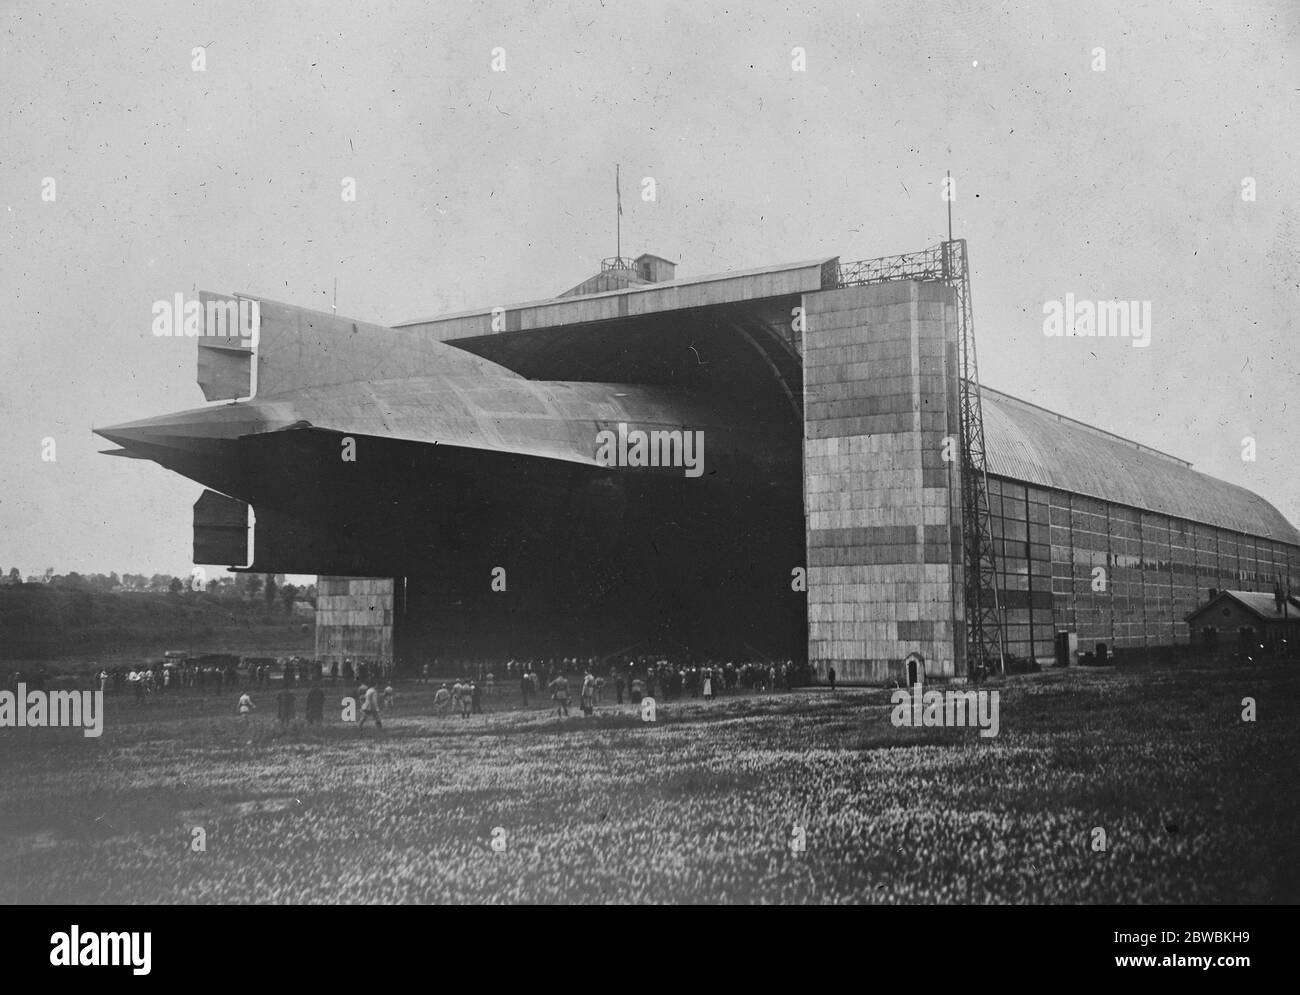 L'Allemagne remet un zeppelin à la France le L 72 entrant dans son hangar le 14 juillet 1920 Banque D'Images